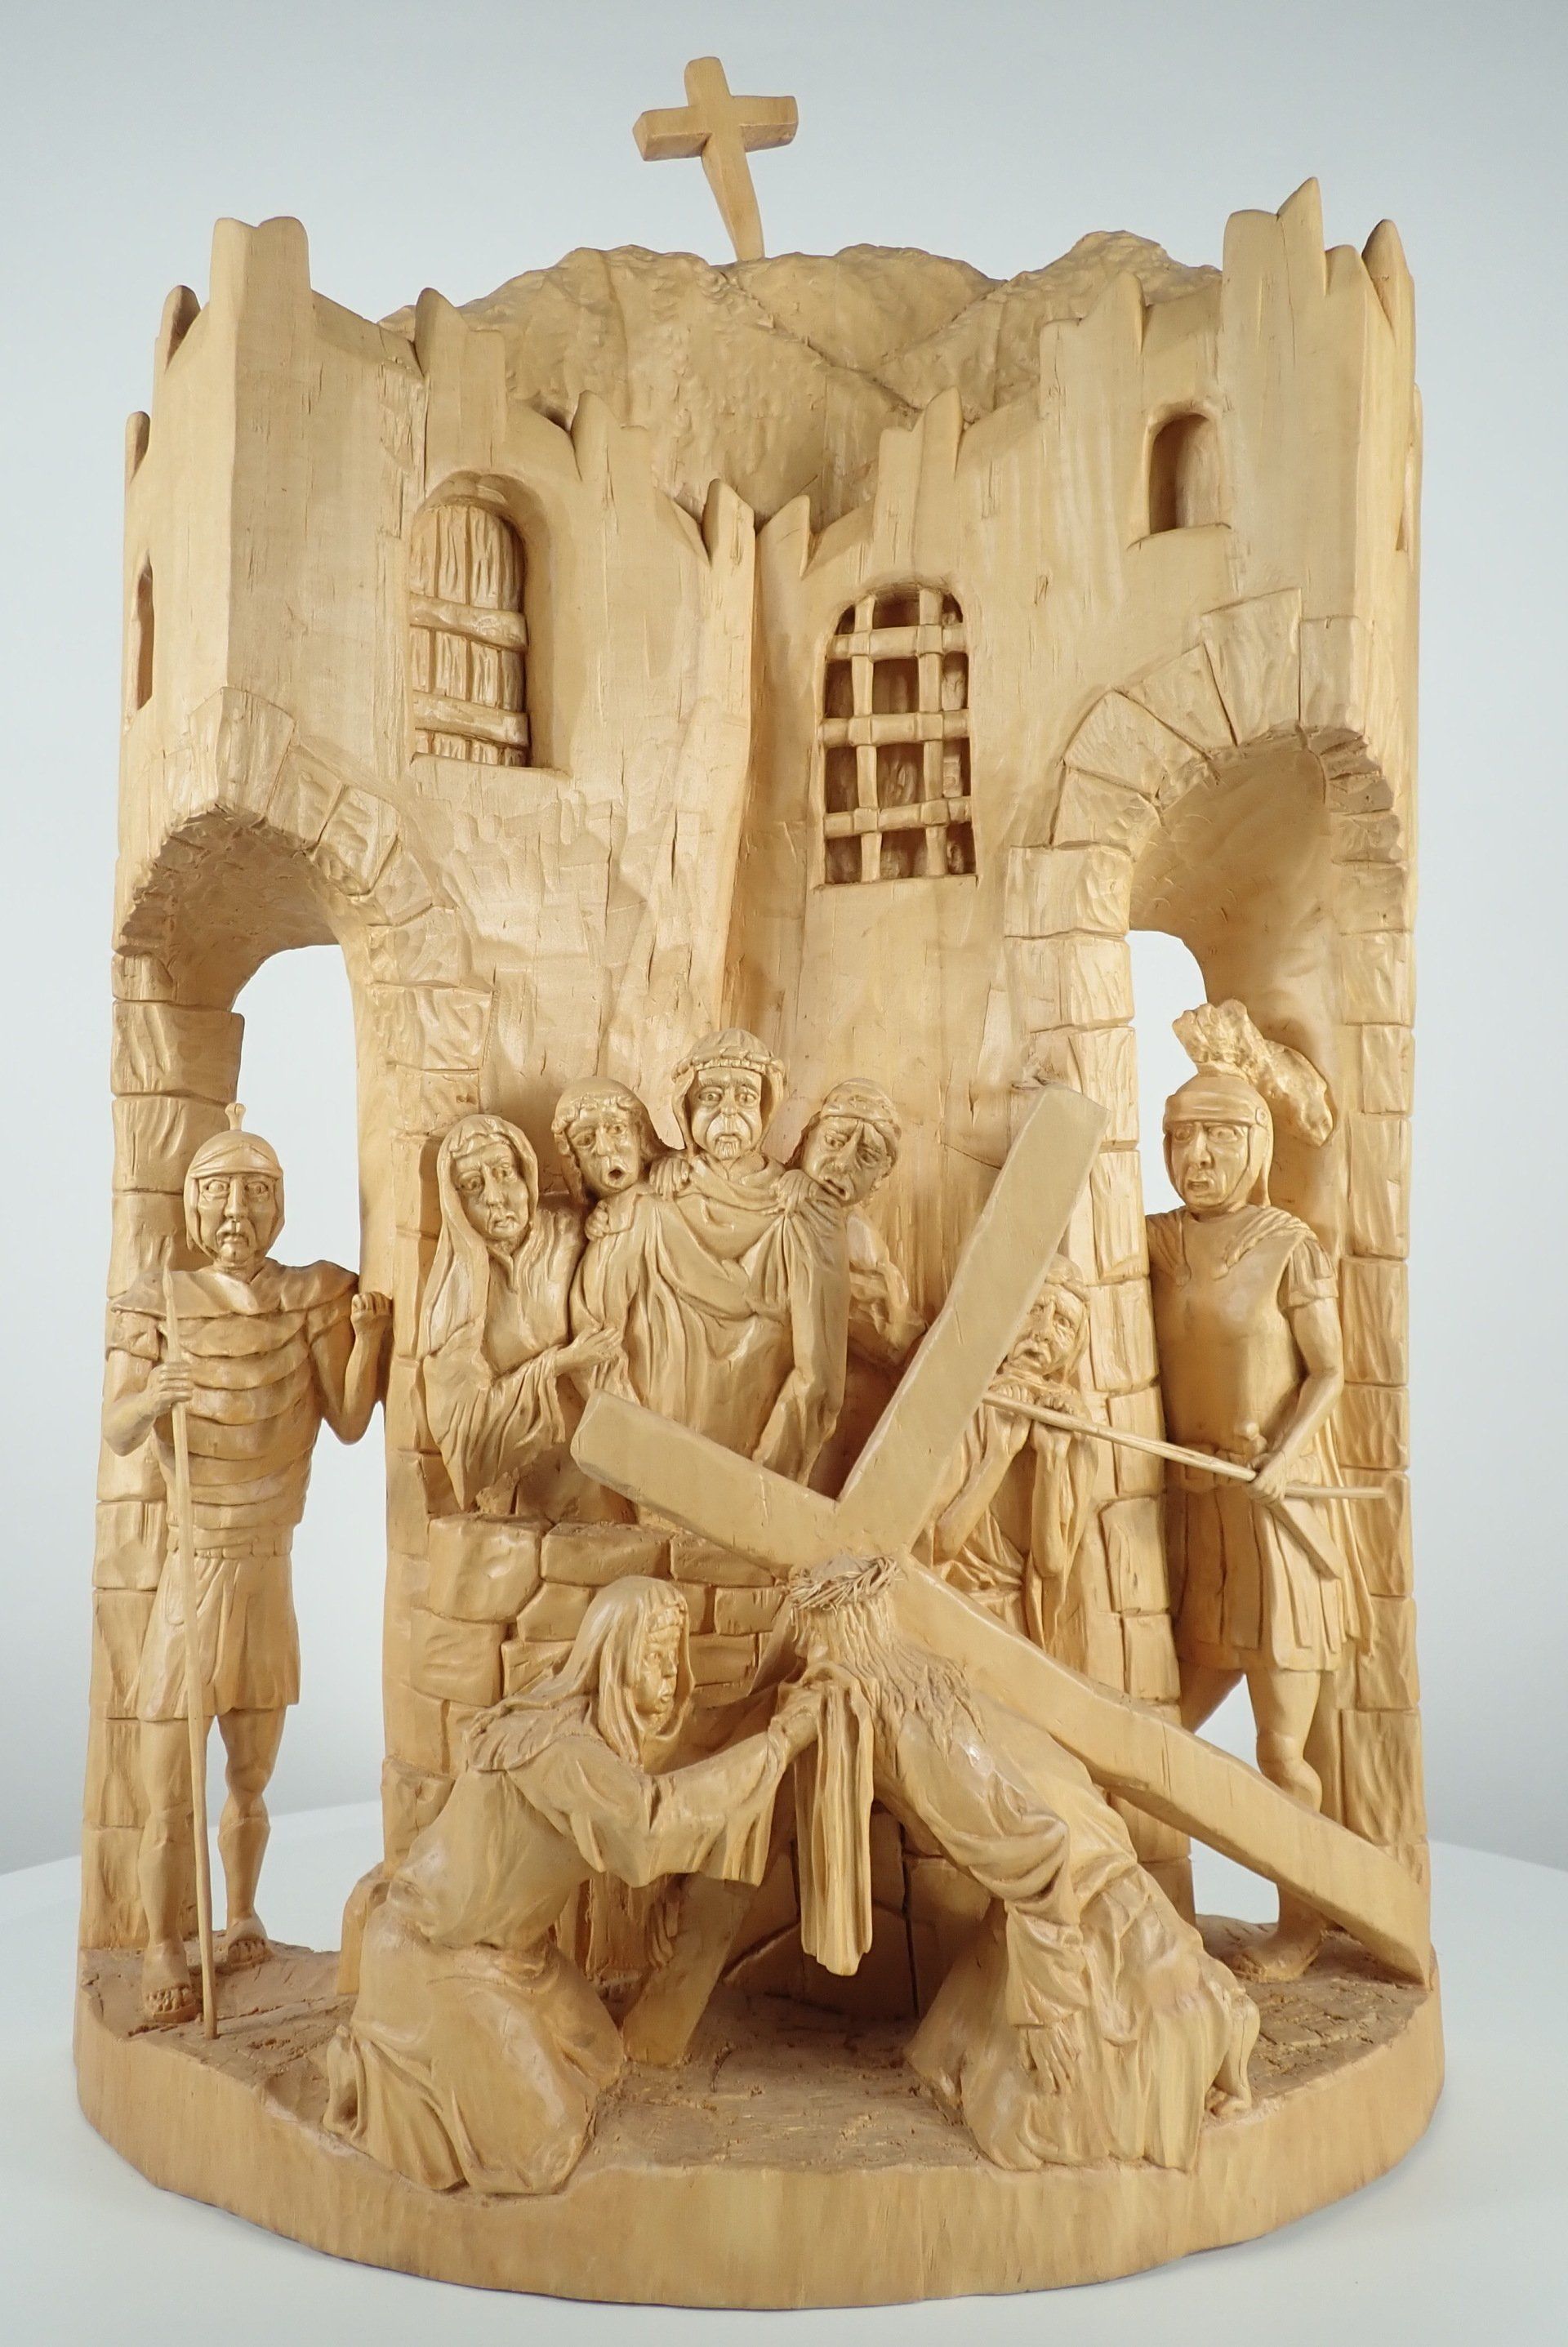 6. Kreuzwegstation, Veronika reicht Jesus das Schweißtuch Skulptur von Holzbildhauer Ralph Hübschmann